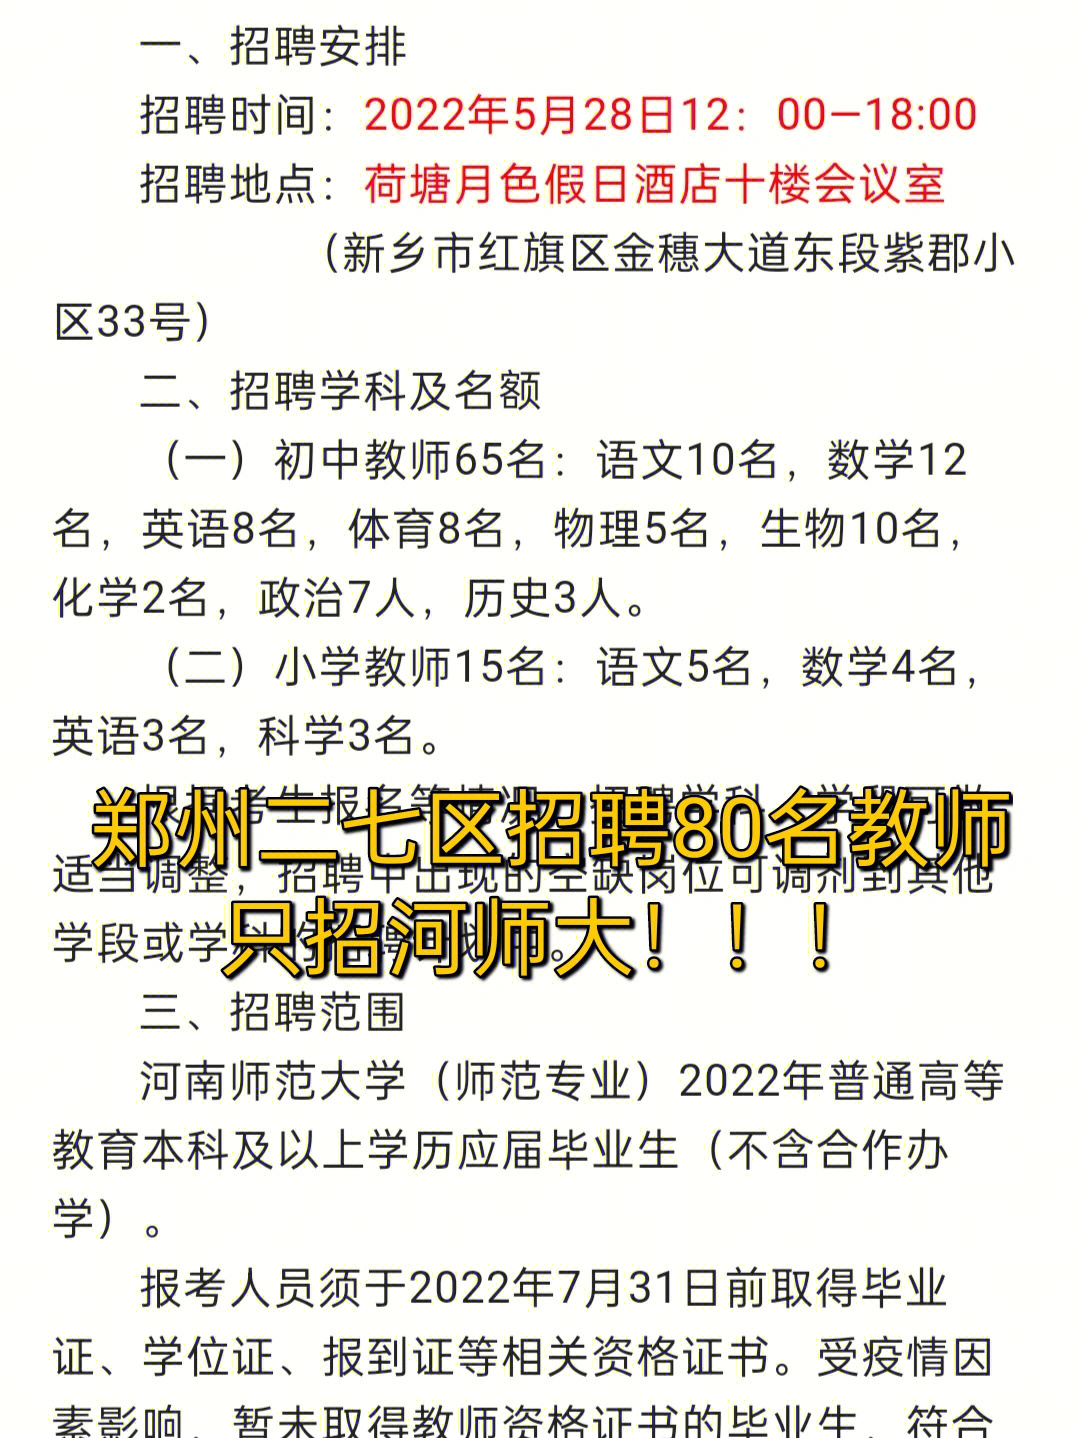 招教公告郑州二七区招聘教师80名